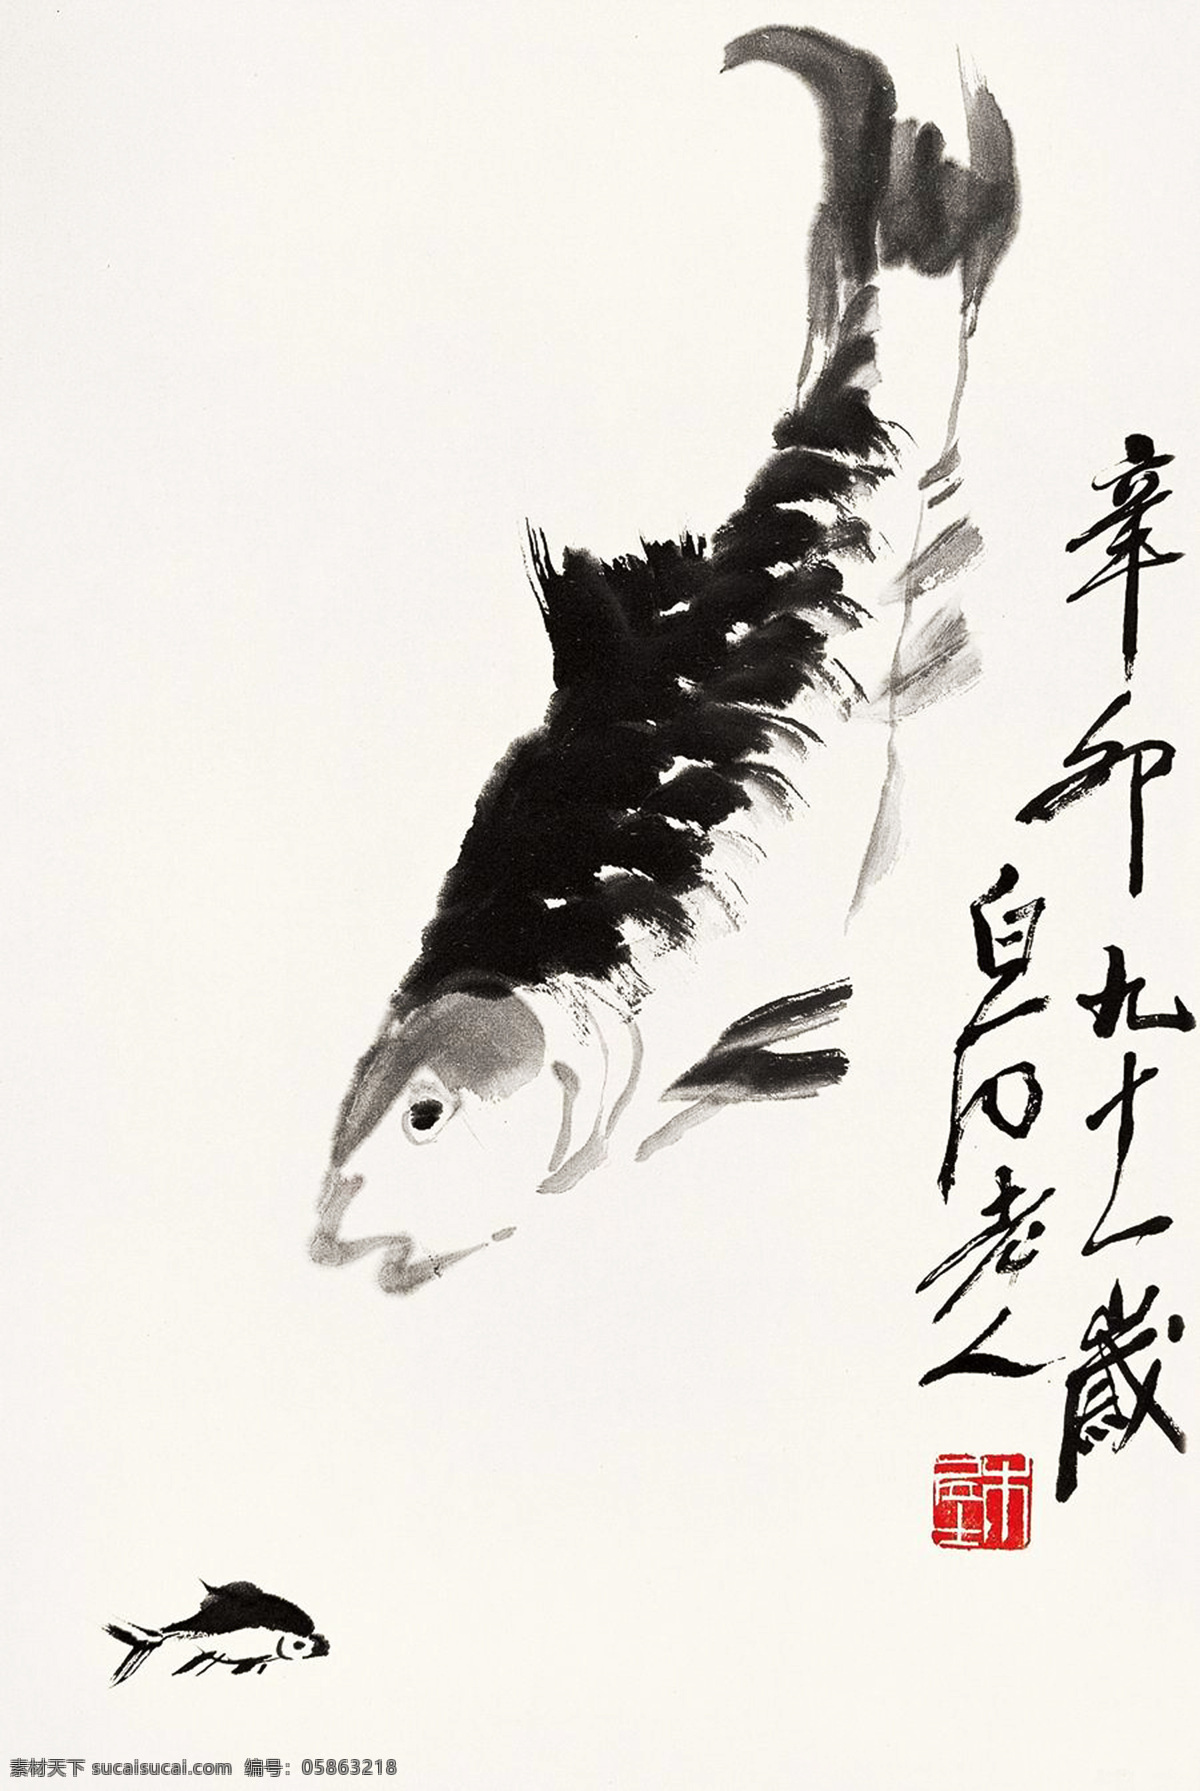 水墨鱼 水墨 国画 鲤鱼 大鱼 小鱼 齐白石 白石老人 九十一岁 作品 当代中国画 绘画书法 文化艺术